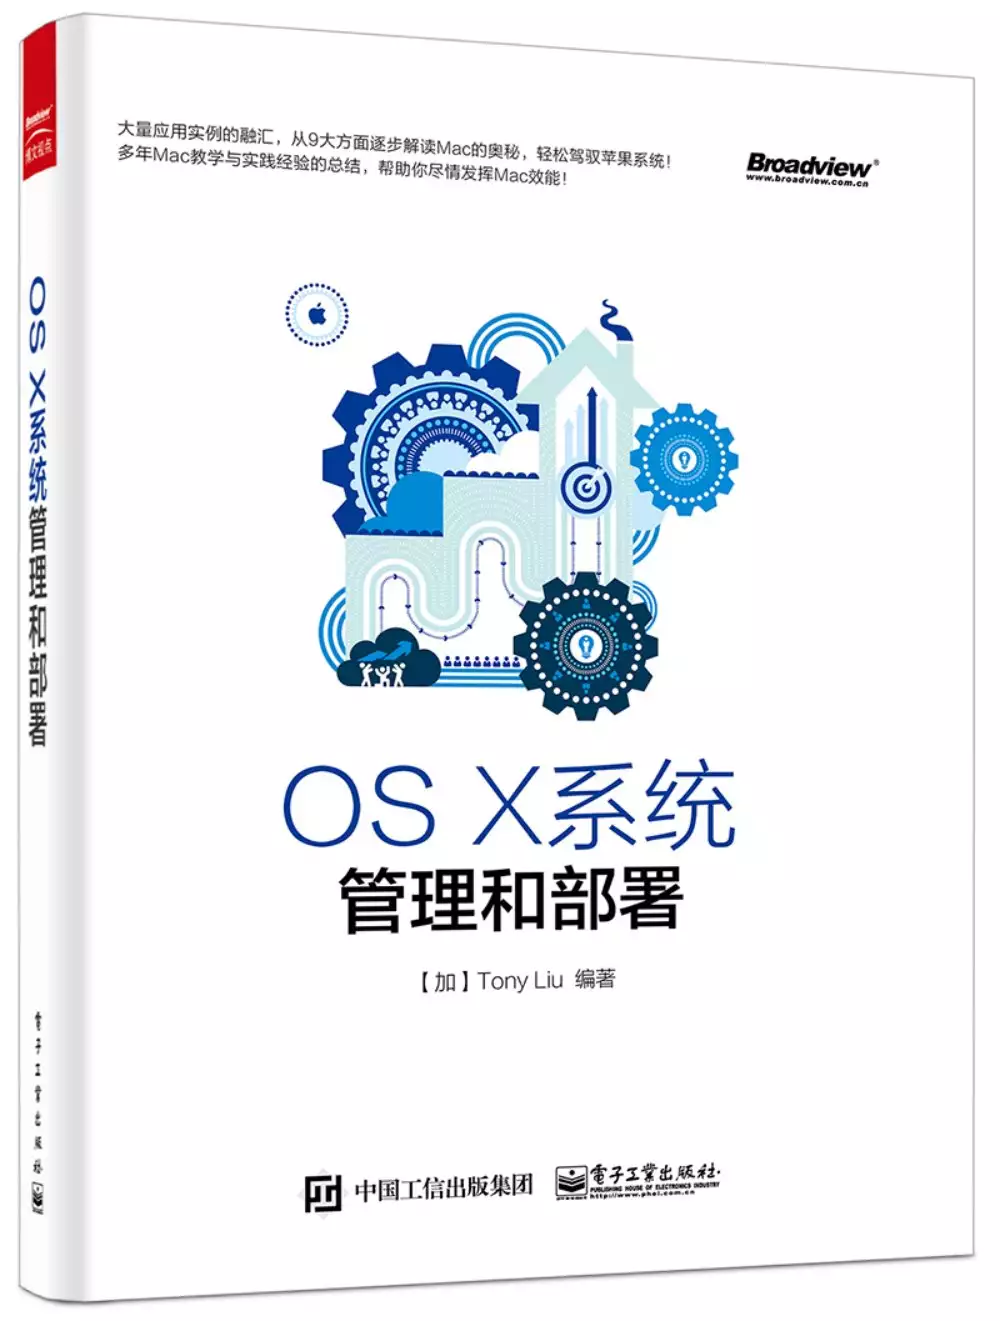 OS X系統管理和部署 封面